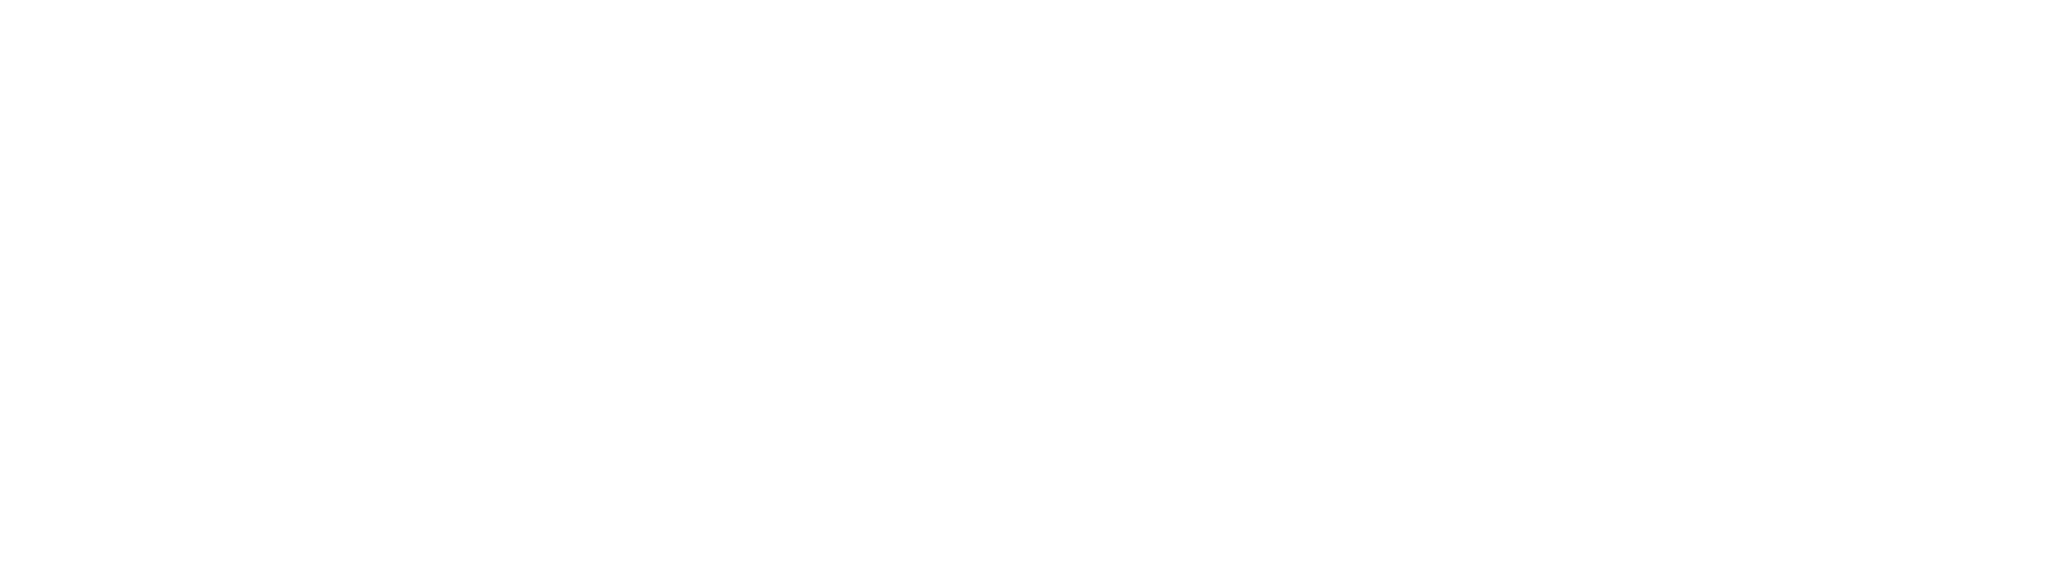 Sport Club Olymp